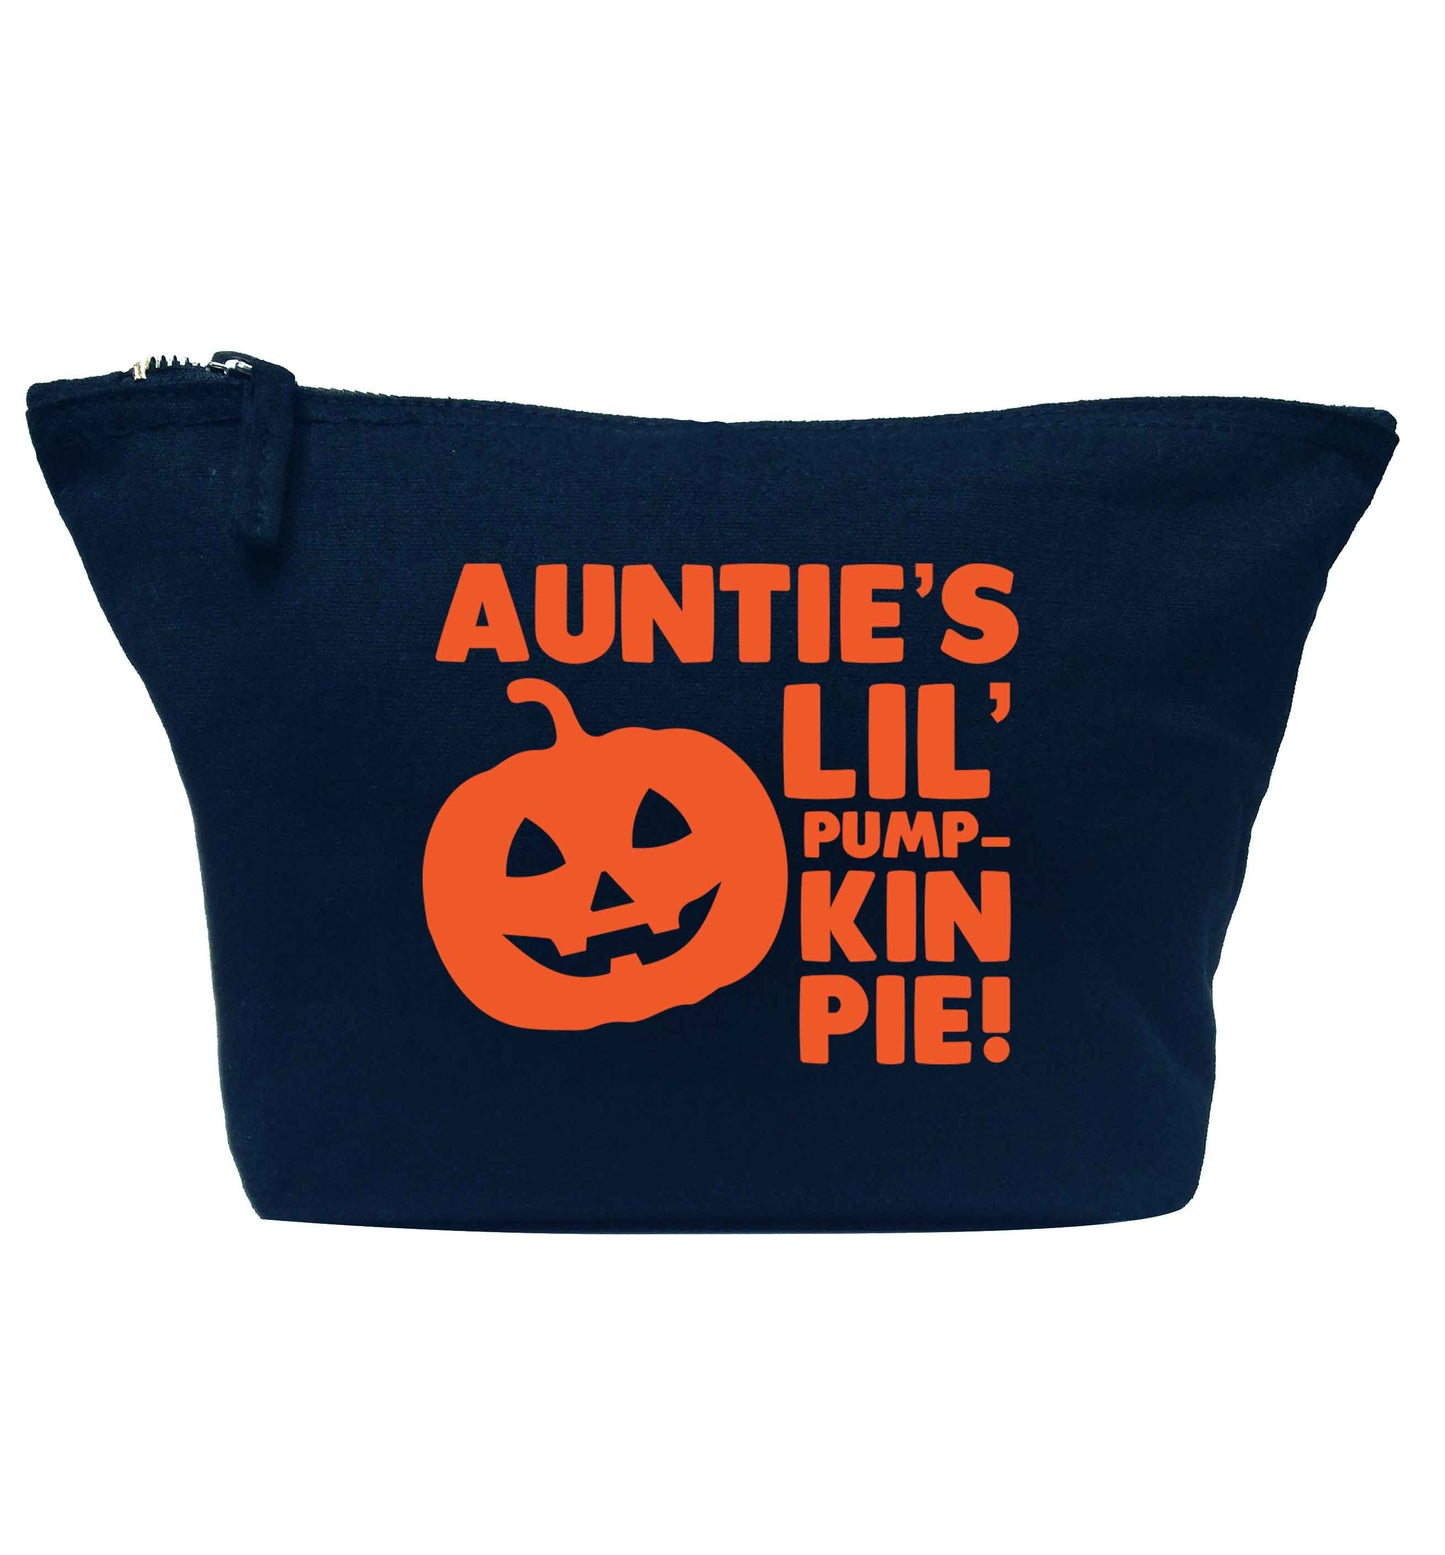 Auntie's lil' pumpkin pie navy makeup bag